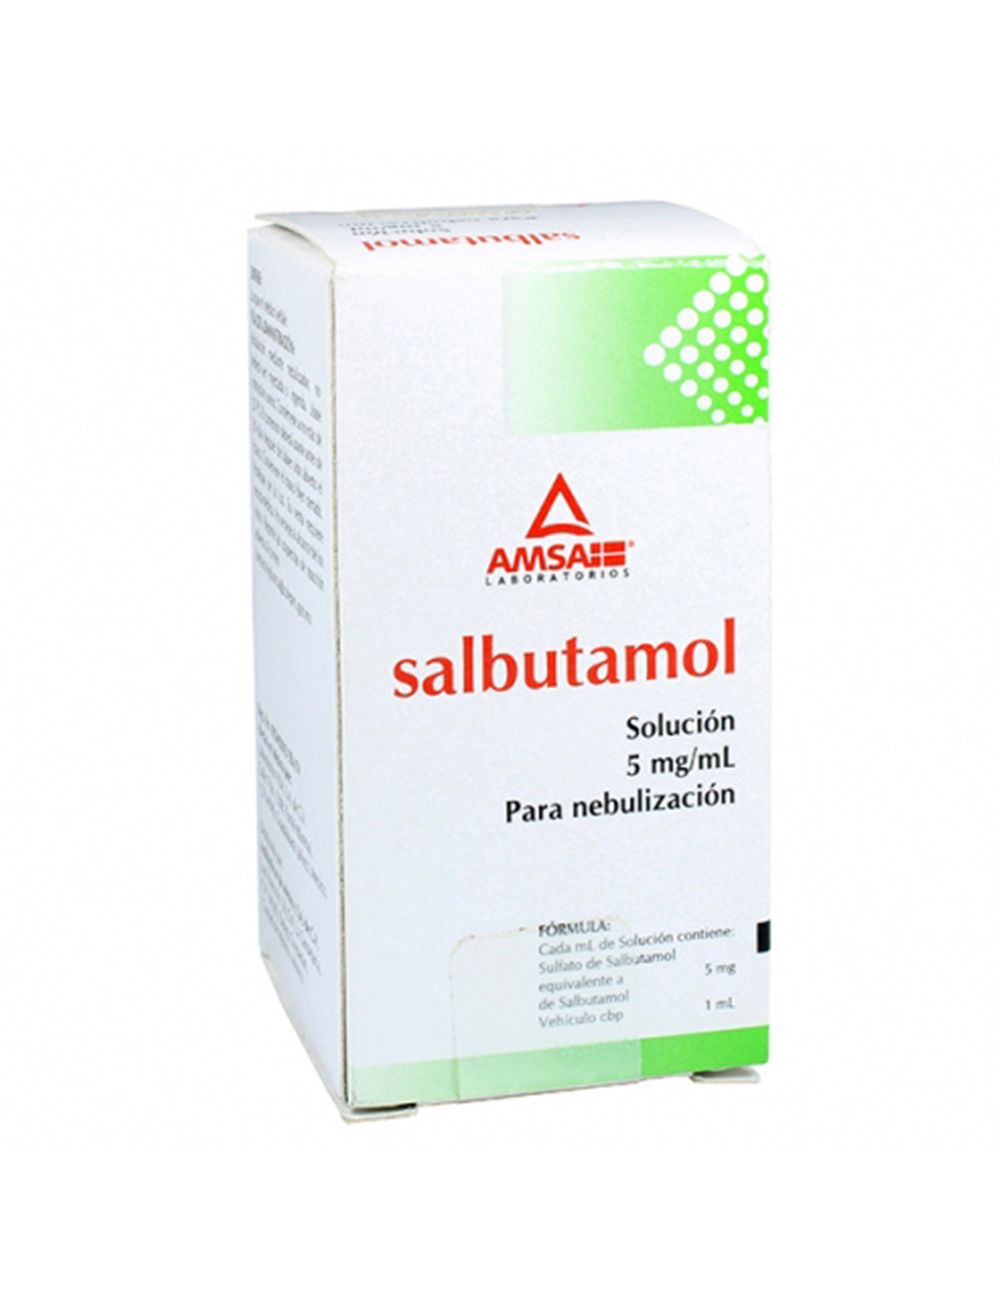 Precio Salbutamol 5 mg/mL solución nebulización | Farmalisto MX